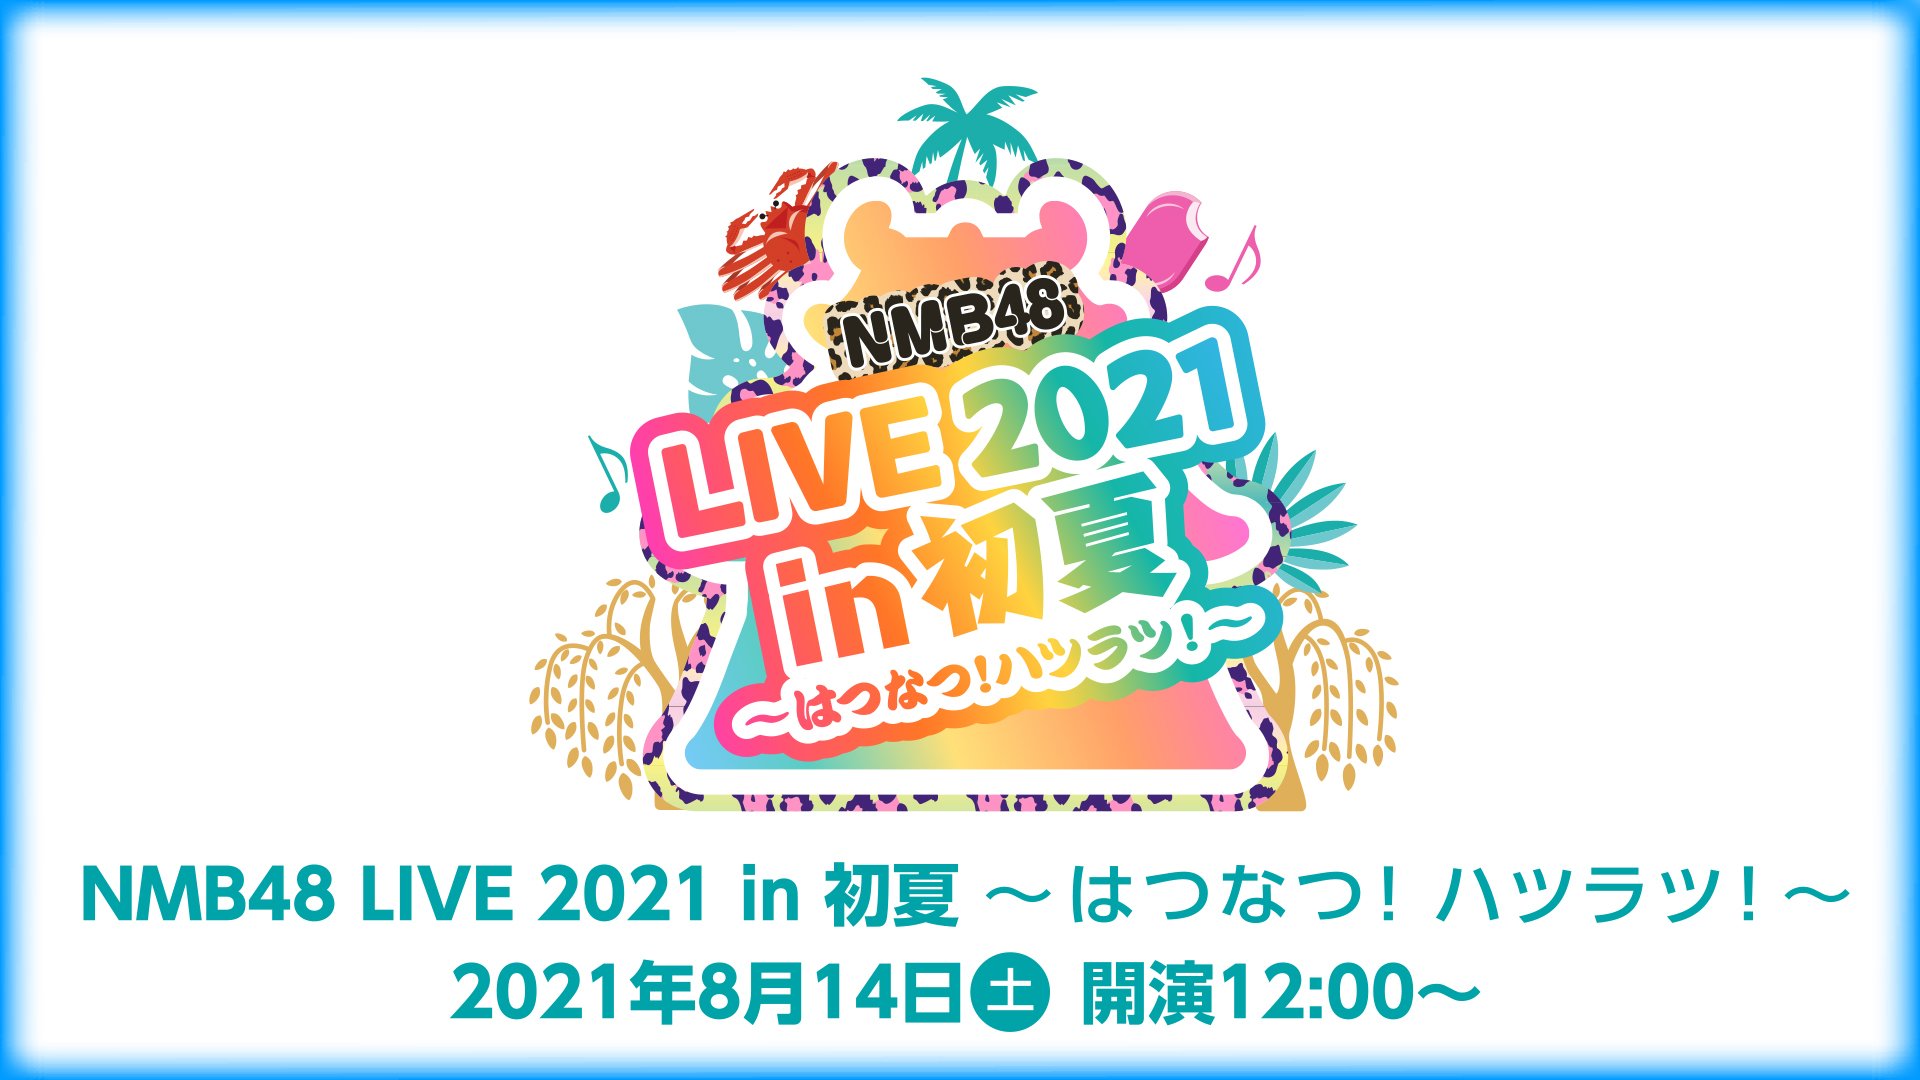 NMB48 LIVE 2021 in Hatsu Natsu ~HATSU NATSU! HATSU RATSU!~ | AKB48